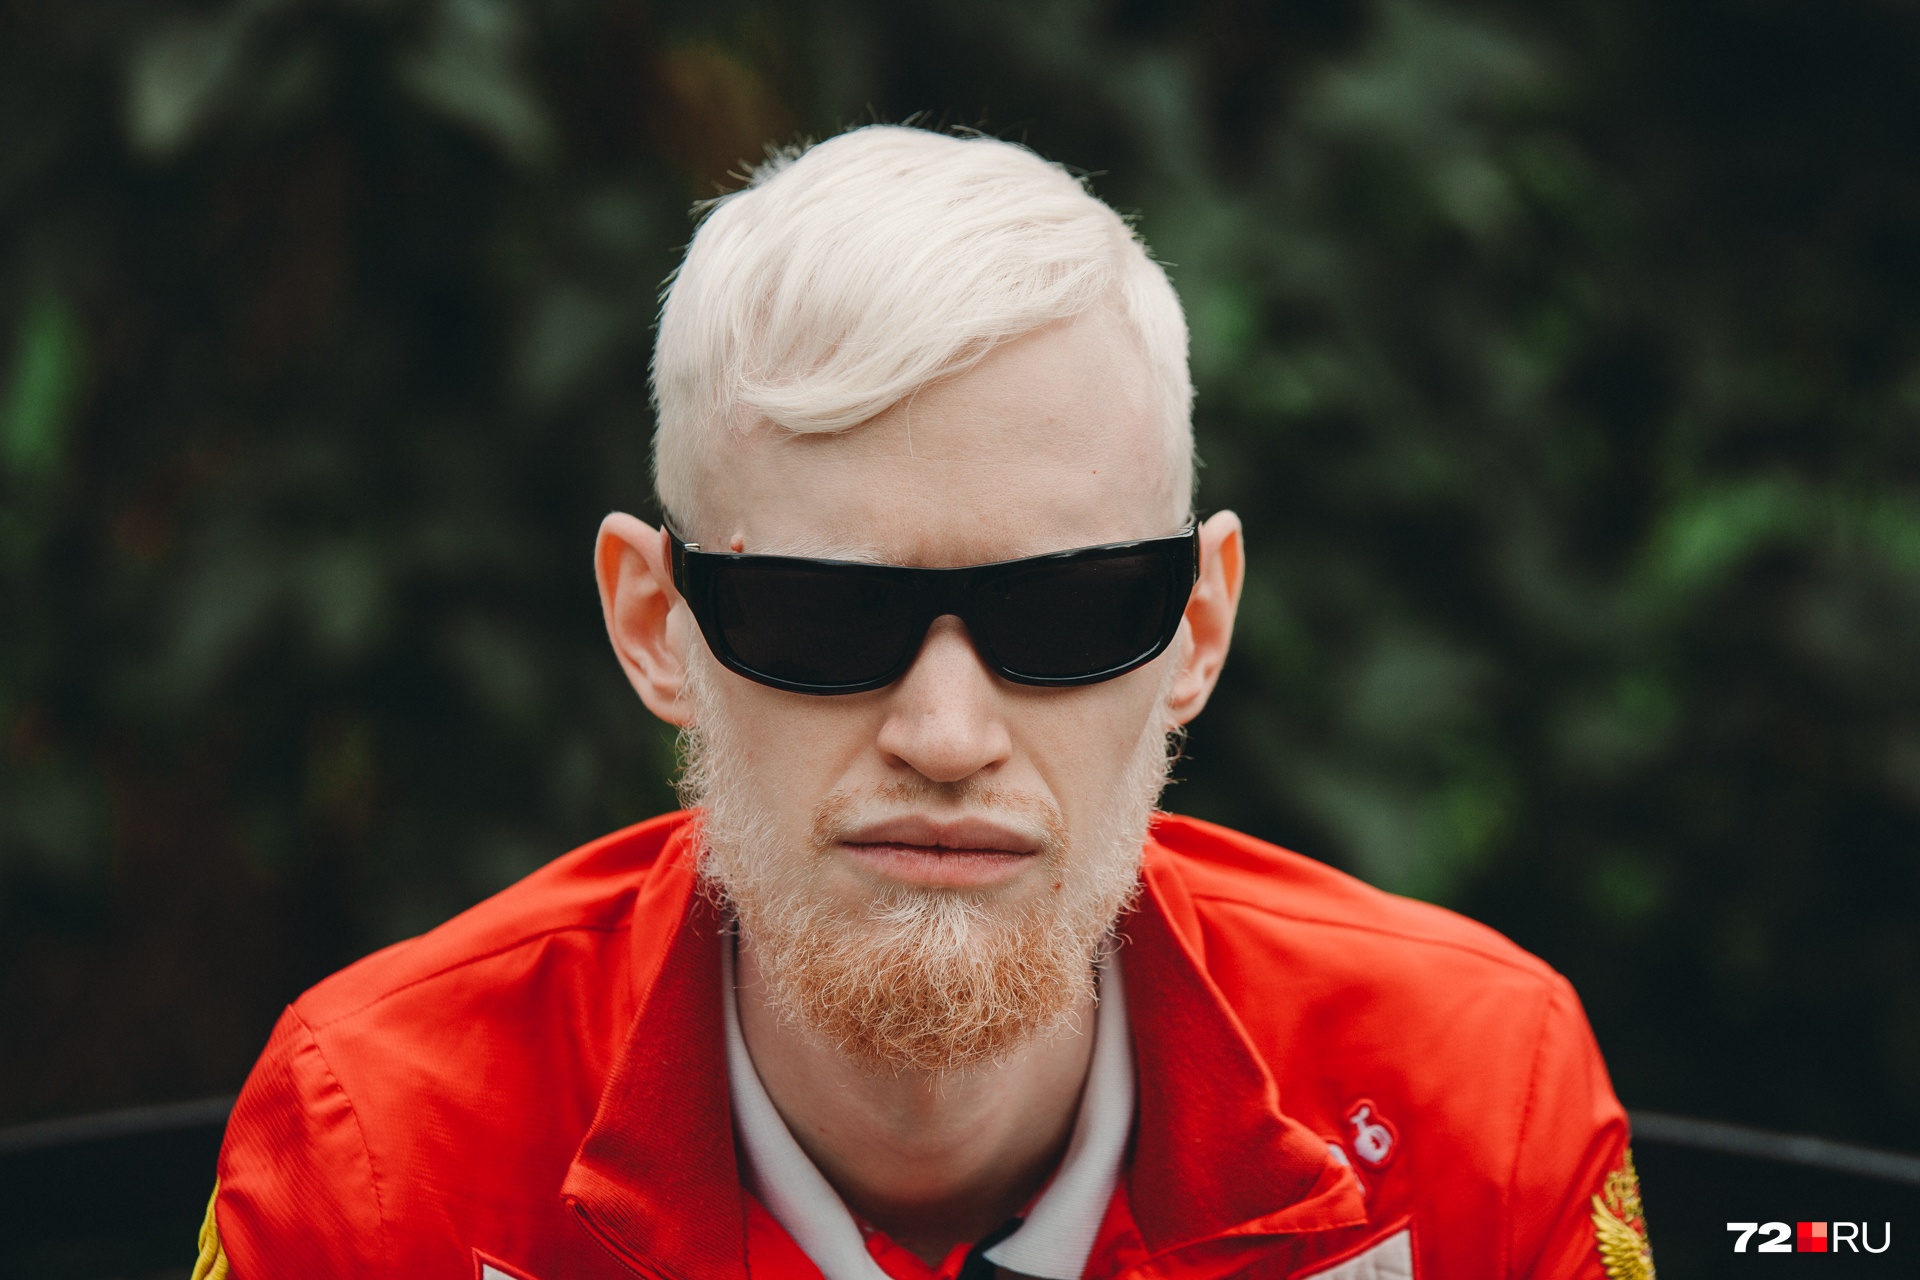 Без очков Ваня практически не выходит из дома. Одно из проявлений альбинизма — проблемы со зрением. Также возможны проблемы со слухом